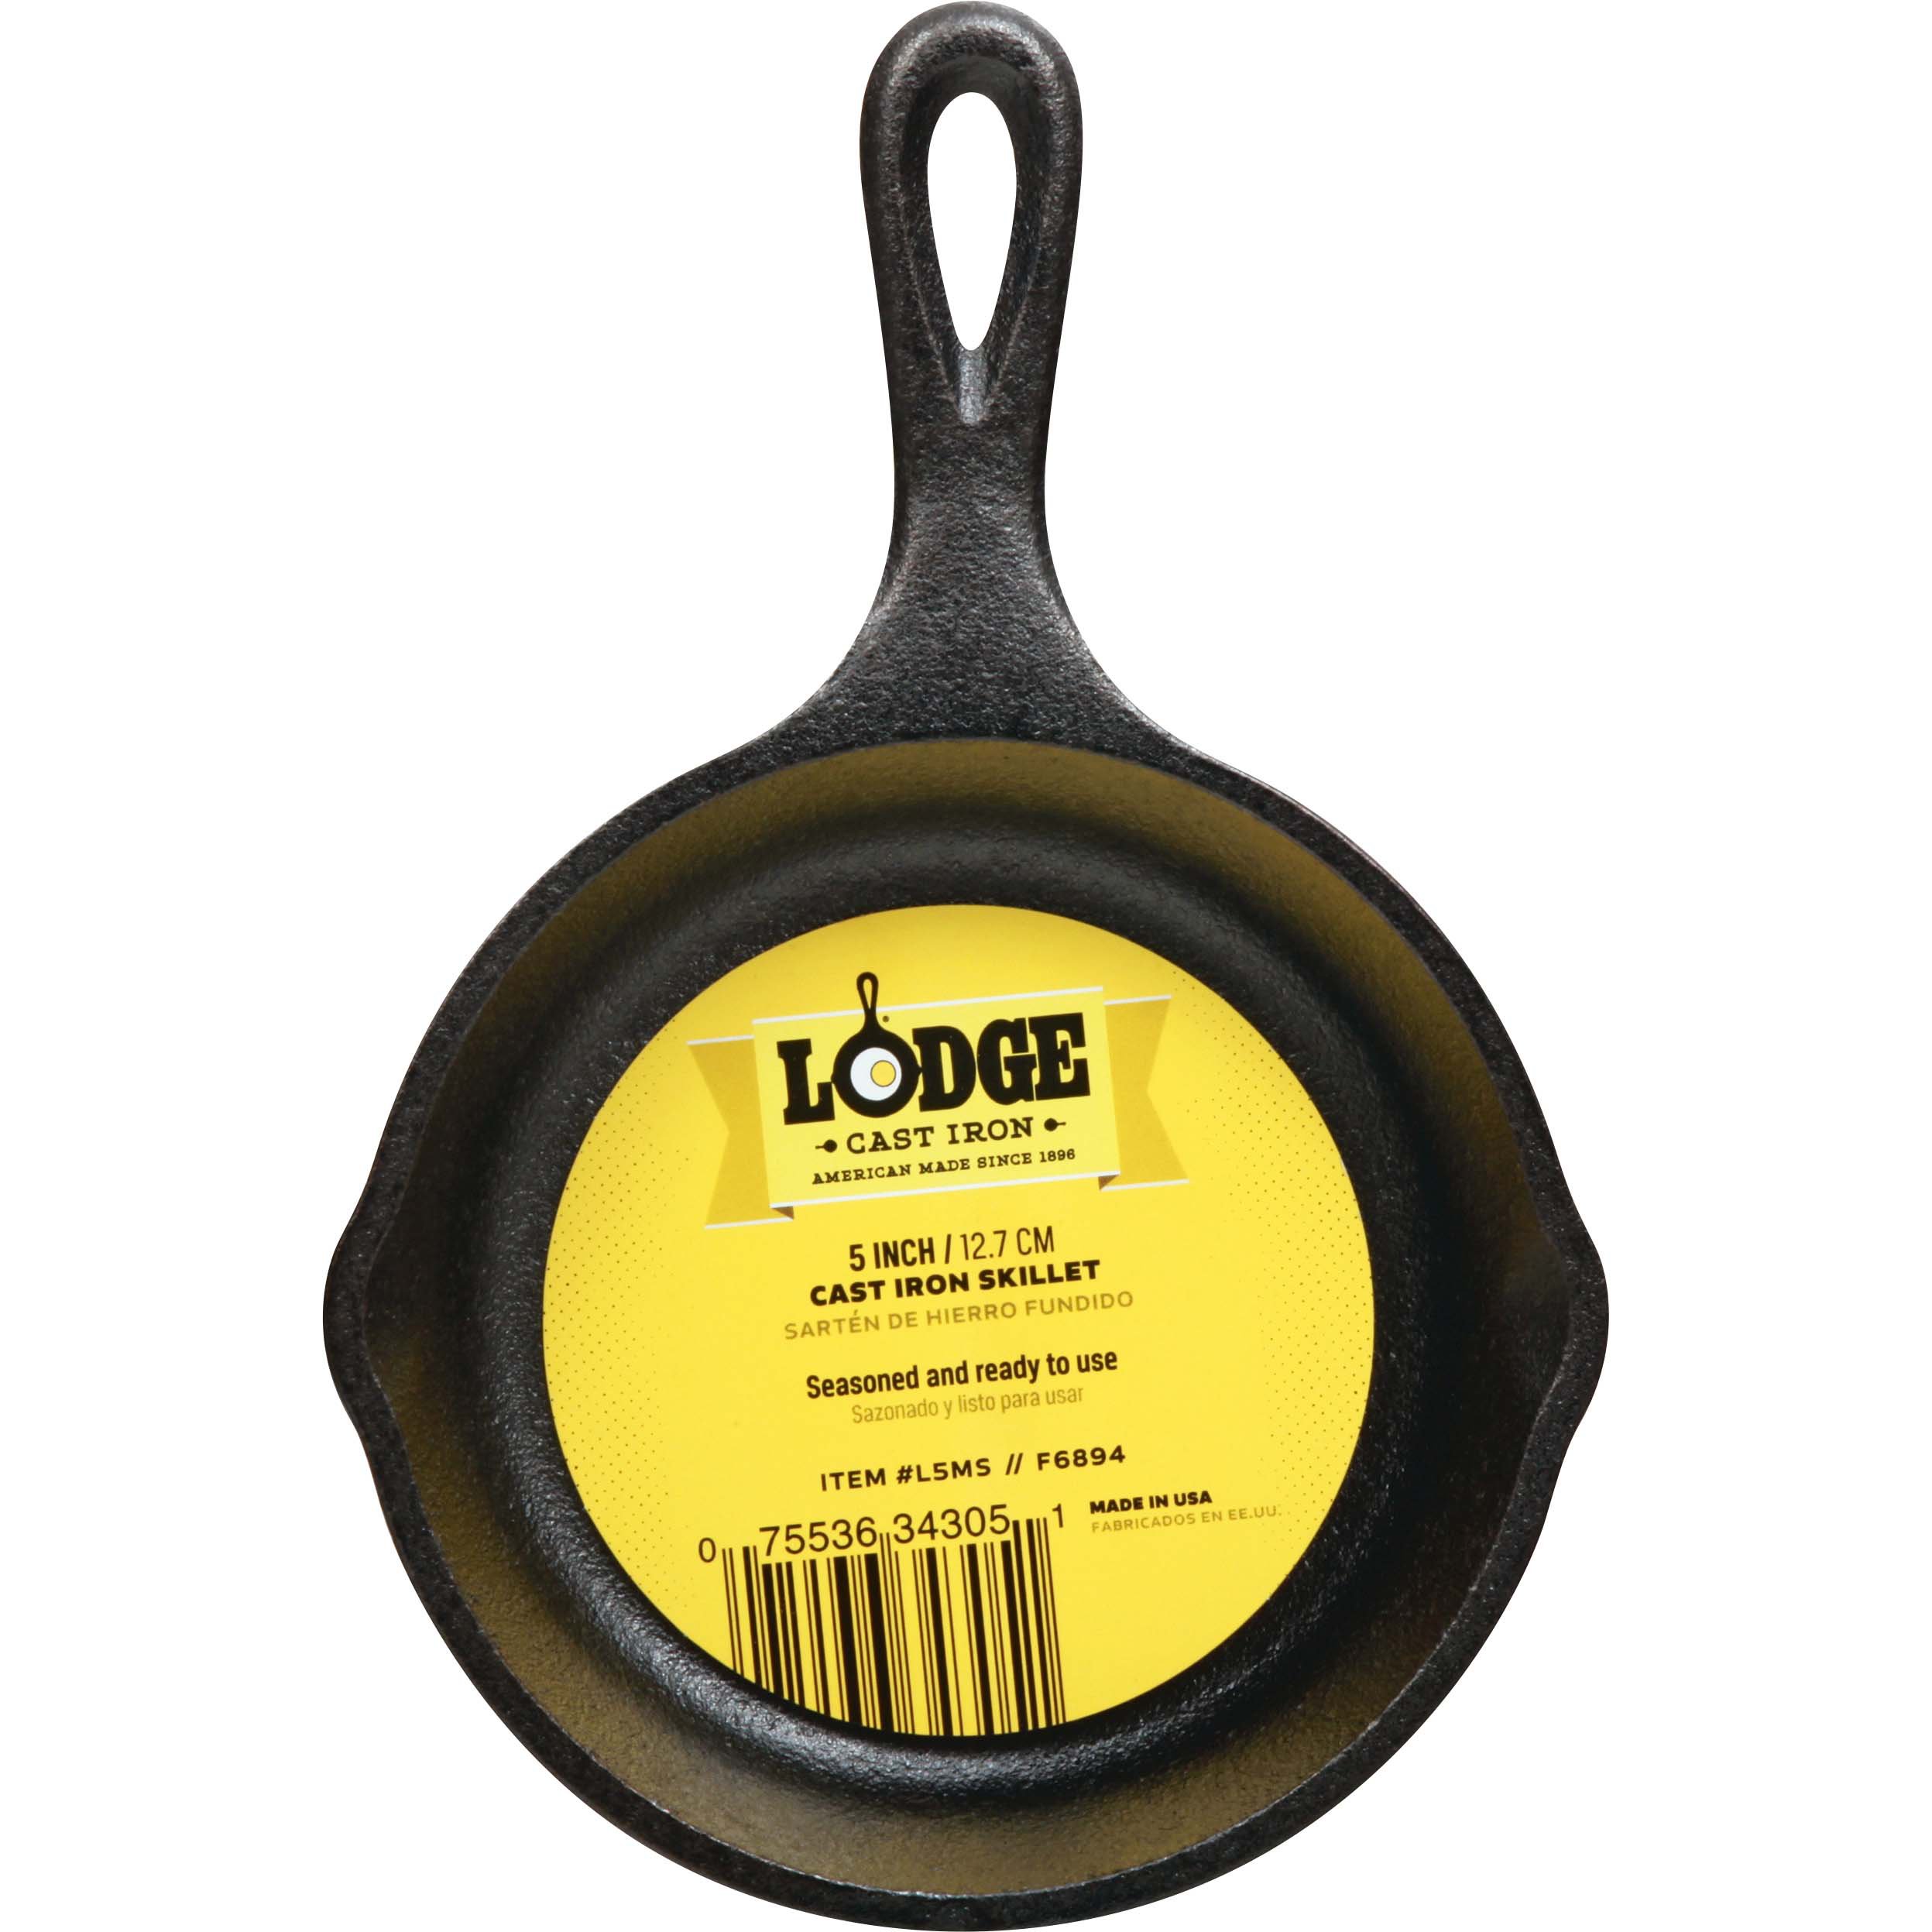 Lodge Mini Cast Iron Skillet - Shop Frying Pans & Griddles at H-E-B